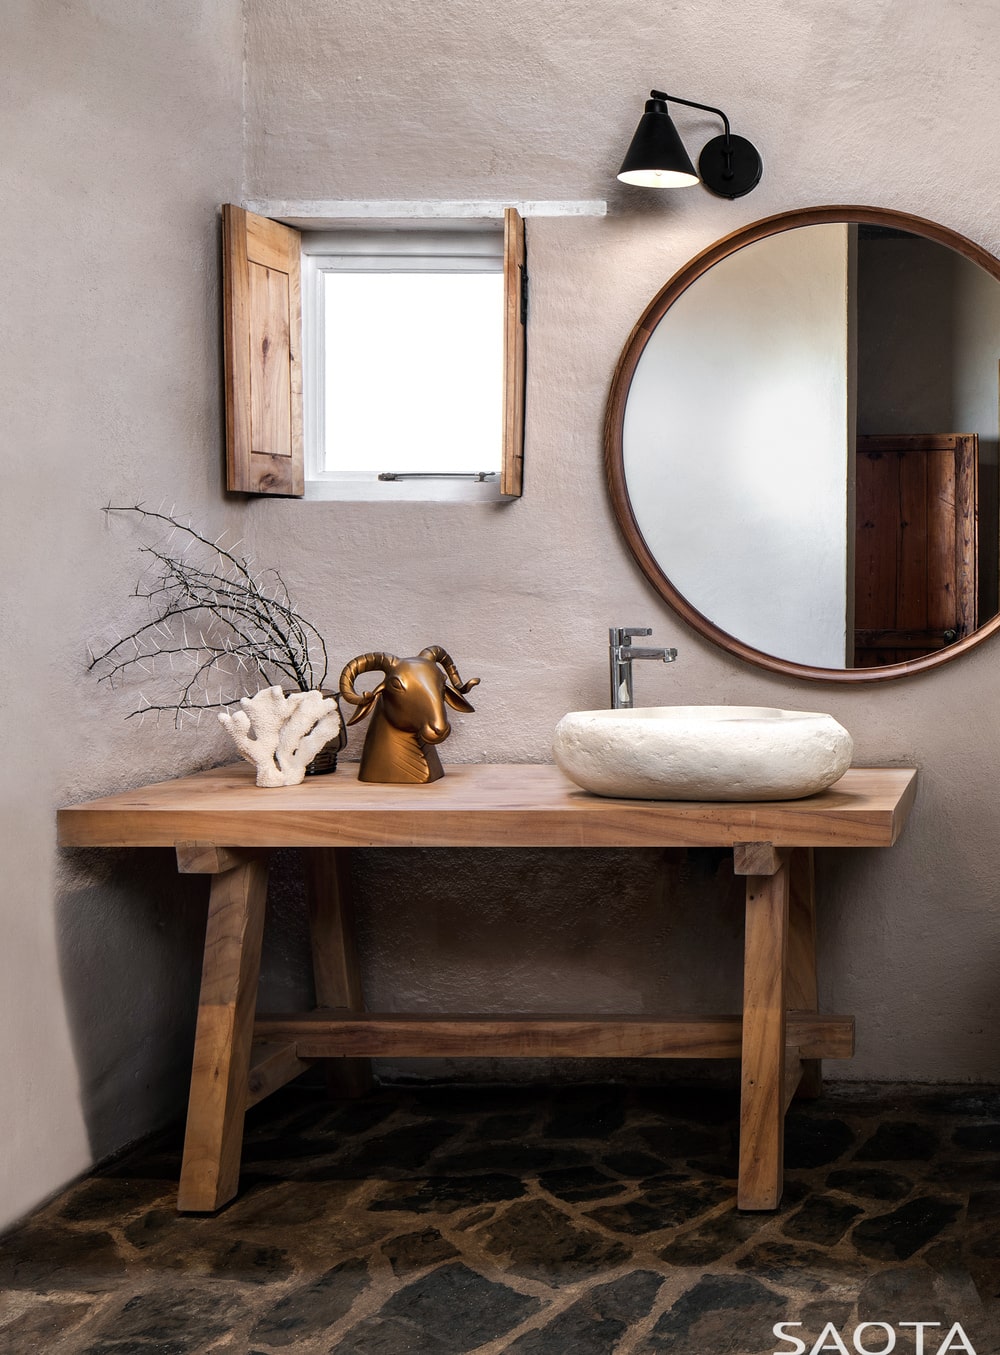 这是一个乡村浴室的近距离观察，有一个木桌作为梳妆台来支撑水槽，配上一个小窗户和一面大镜子。